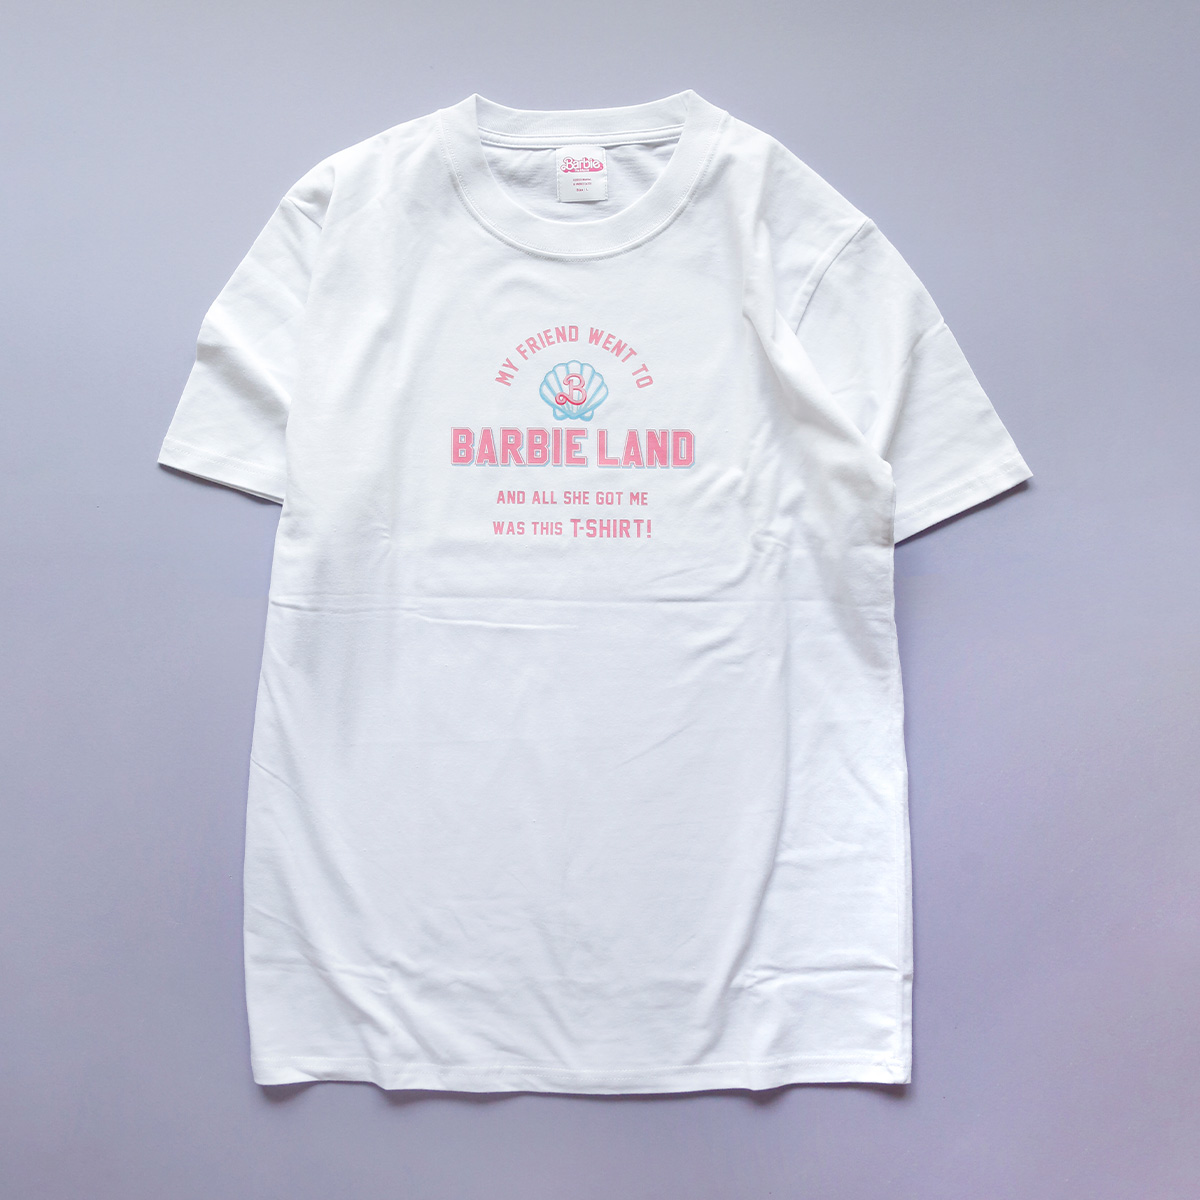 映画「バービー」 Tシャツ Lサイズ - バービー公式オンラインストア